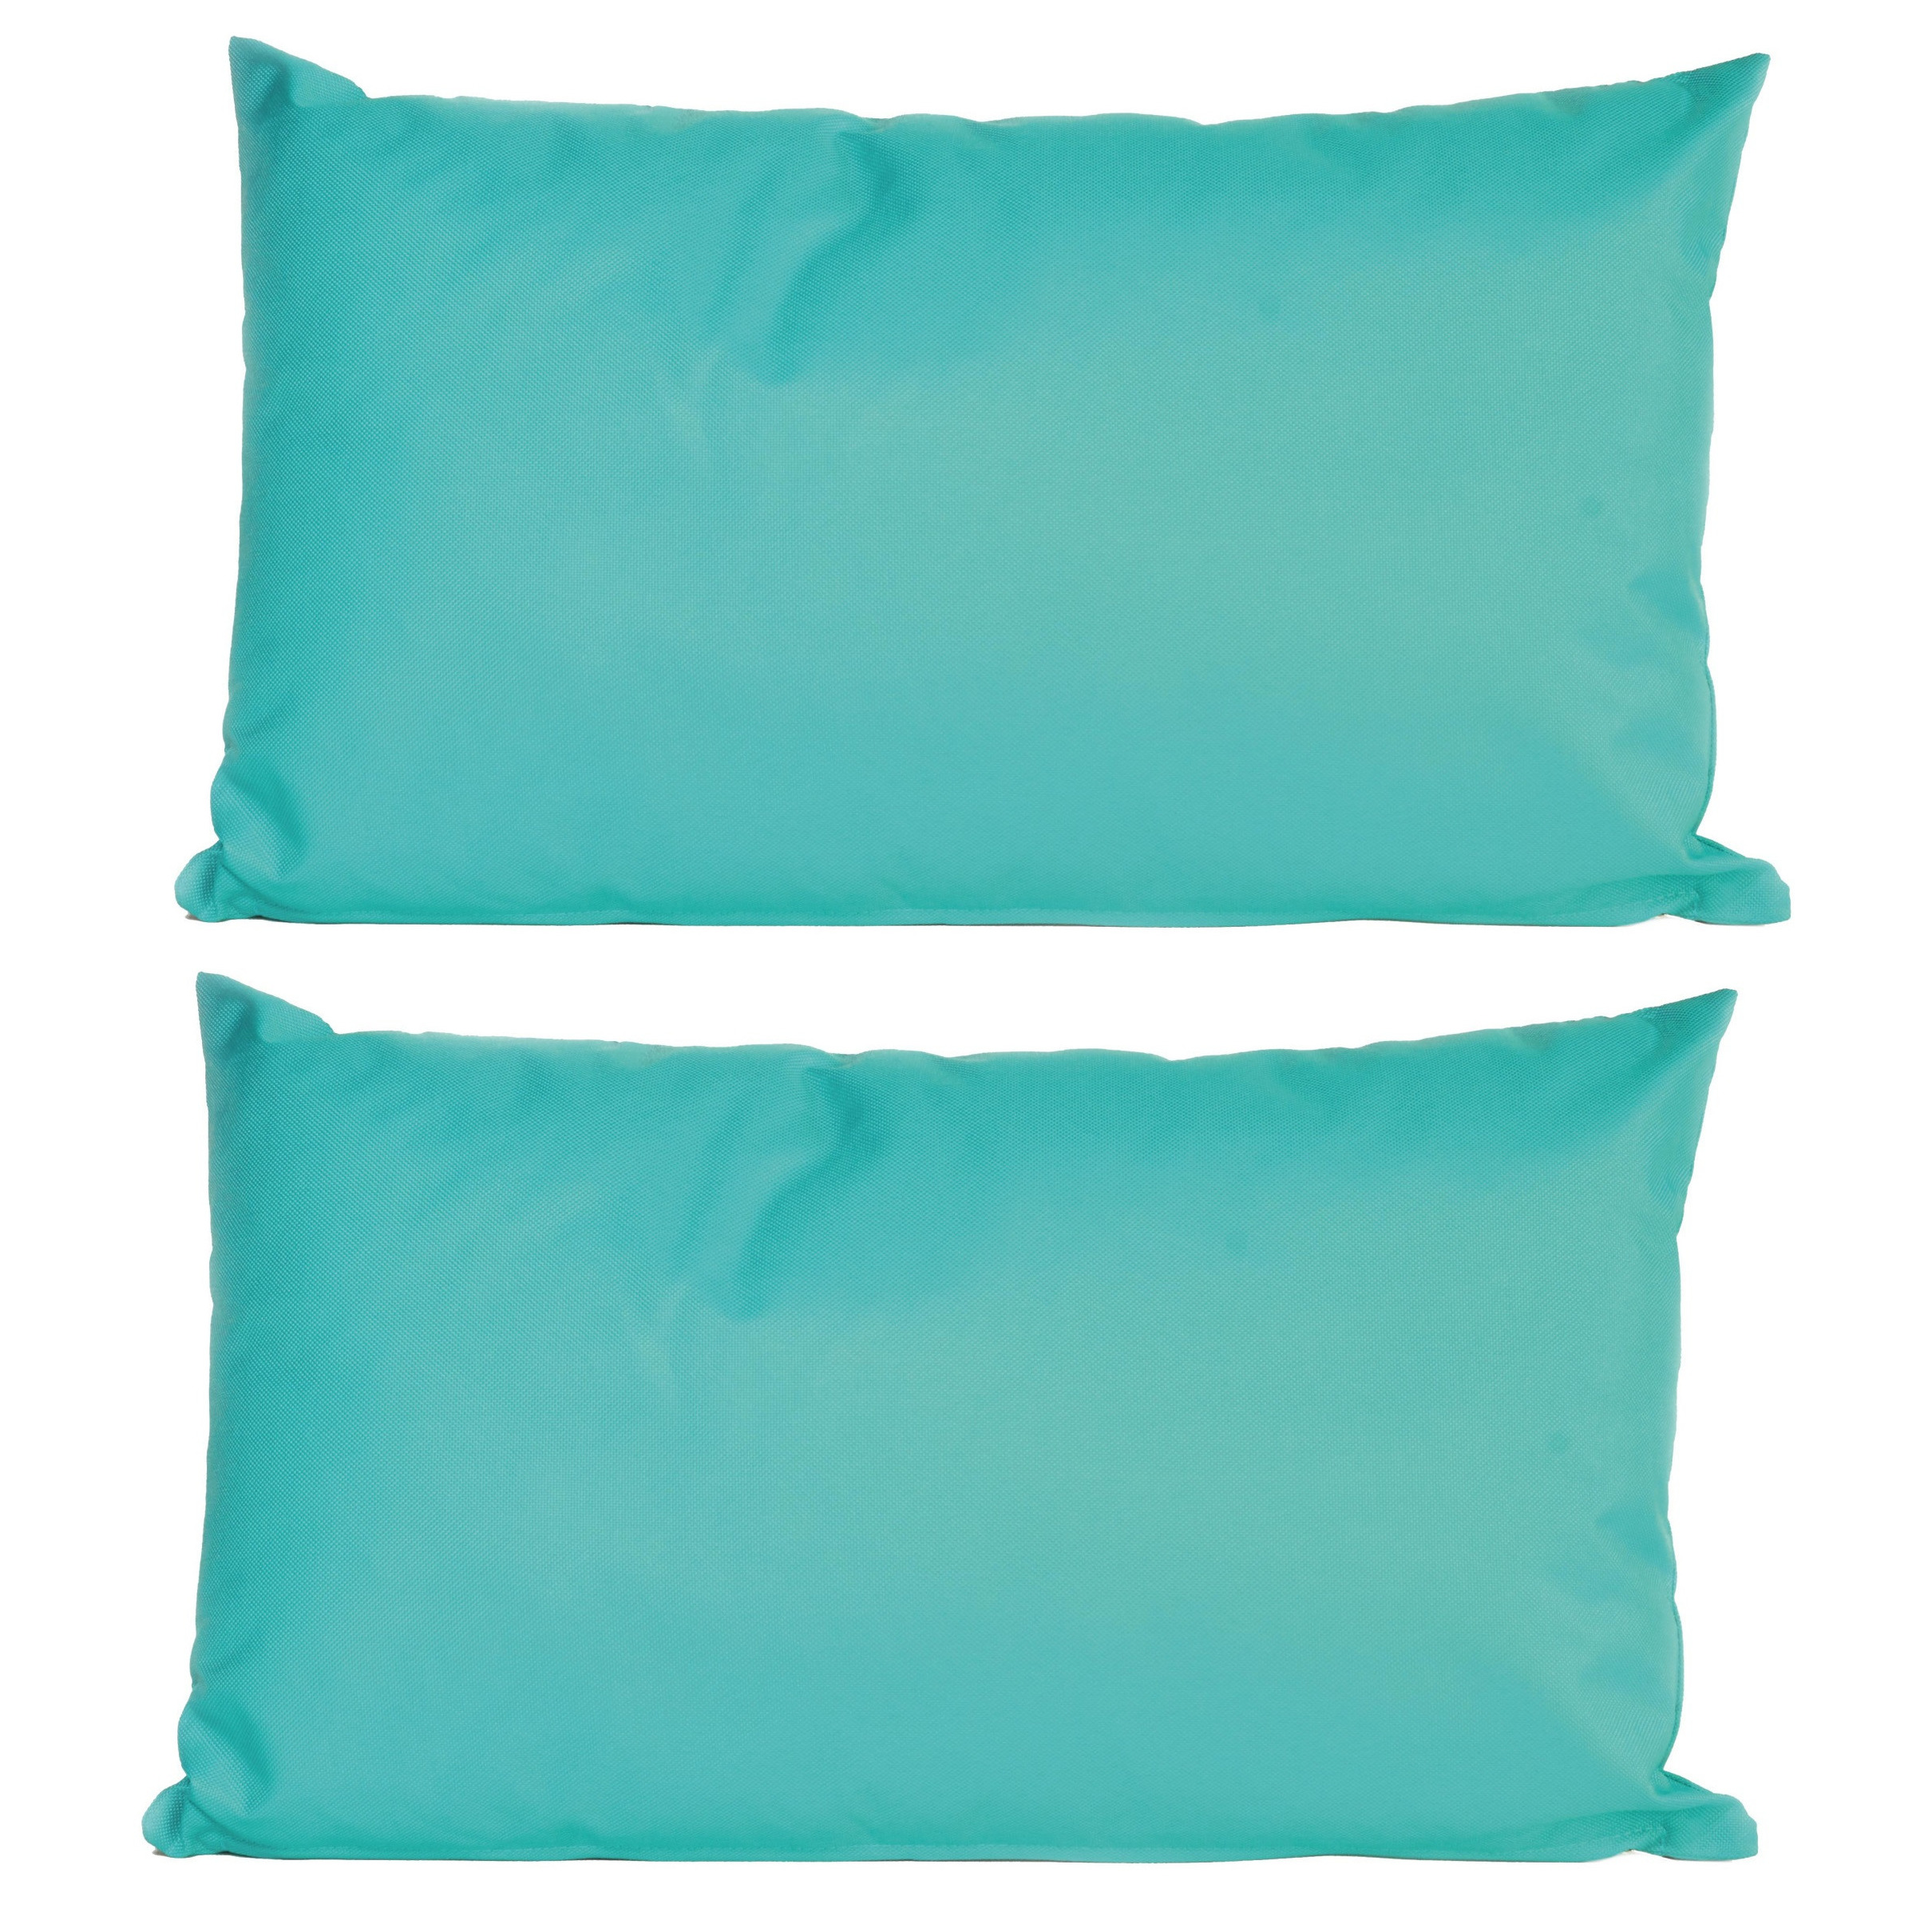 8x Bank-sier kussens voor binnen en buiten in de kleur aqua blauw 30 x 50 cm